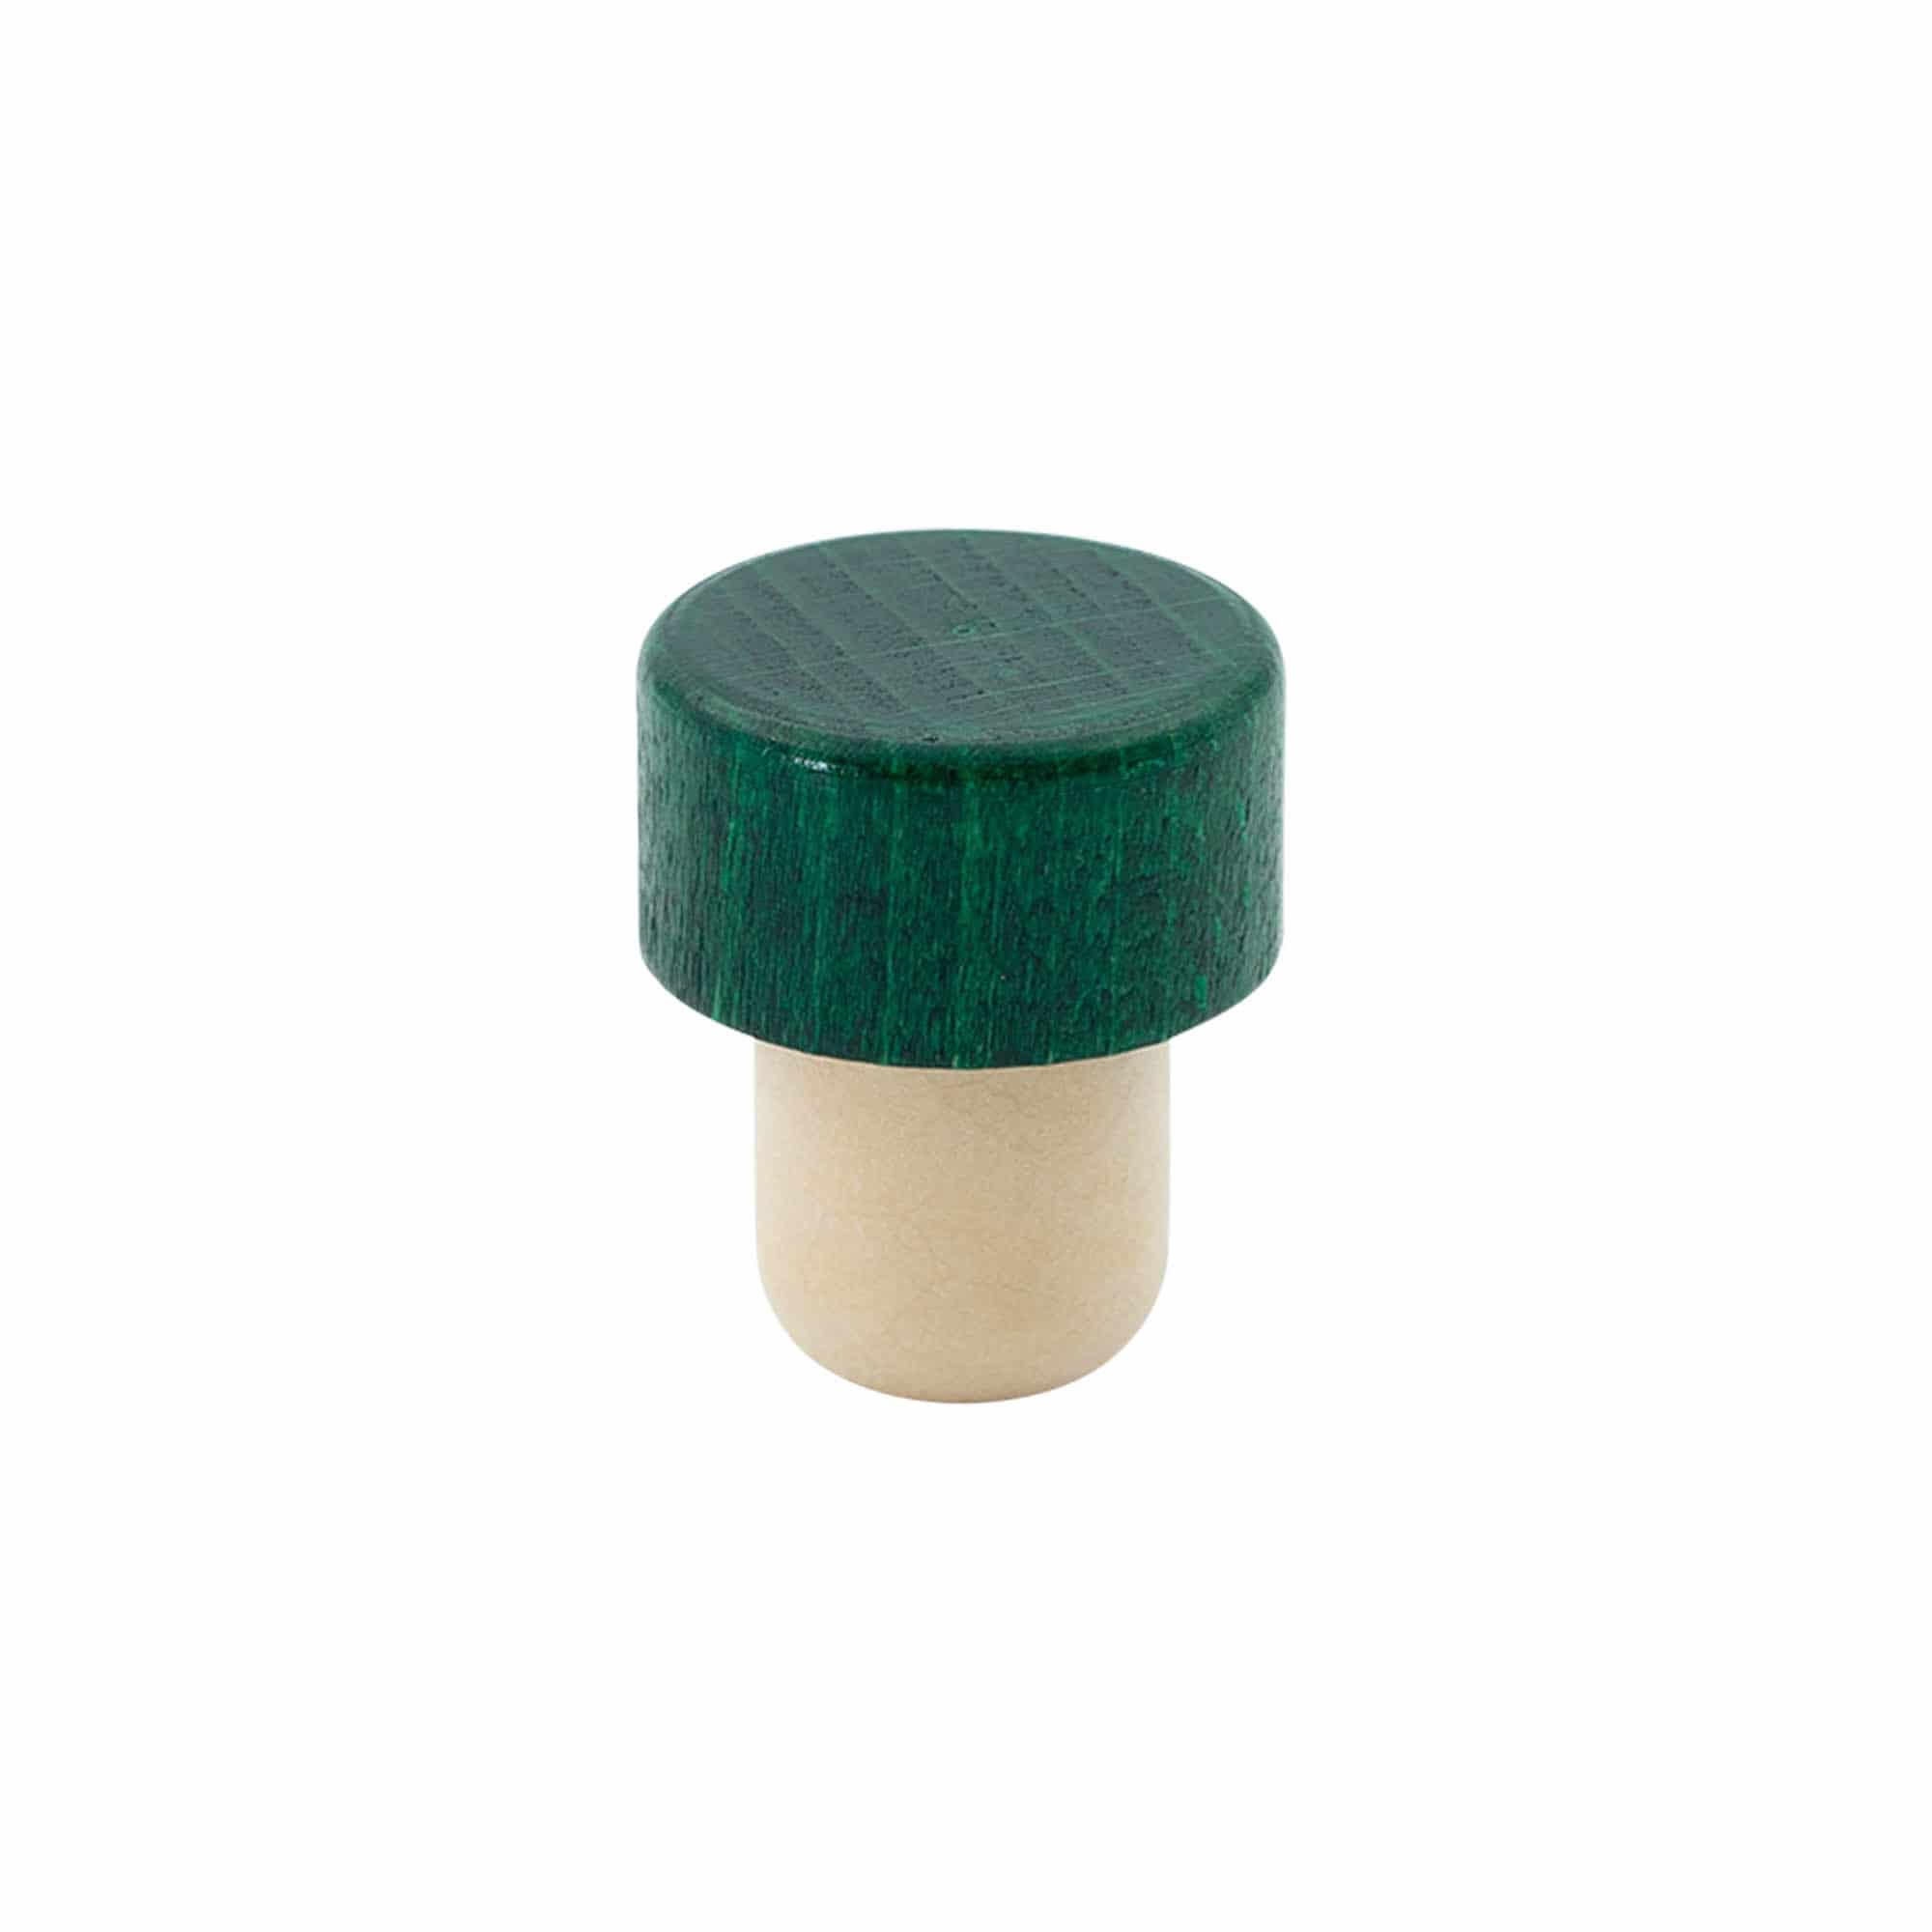 Korek s úchytem 19 mm, dřevo, zelený, pro uzávěr: korek